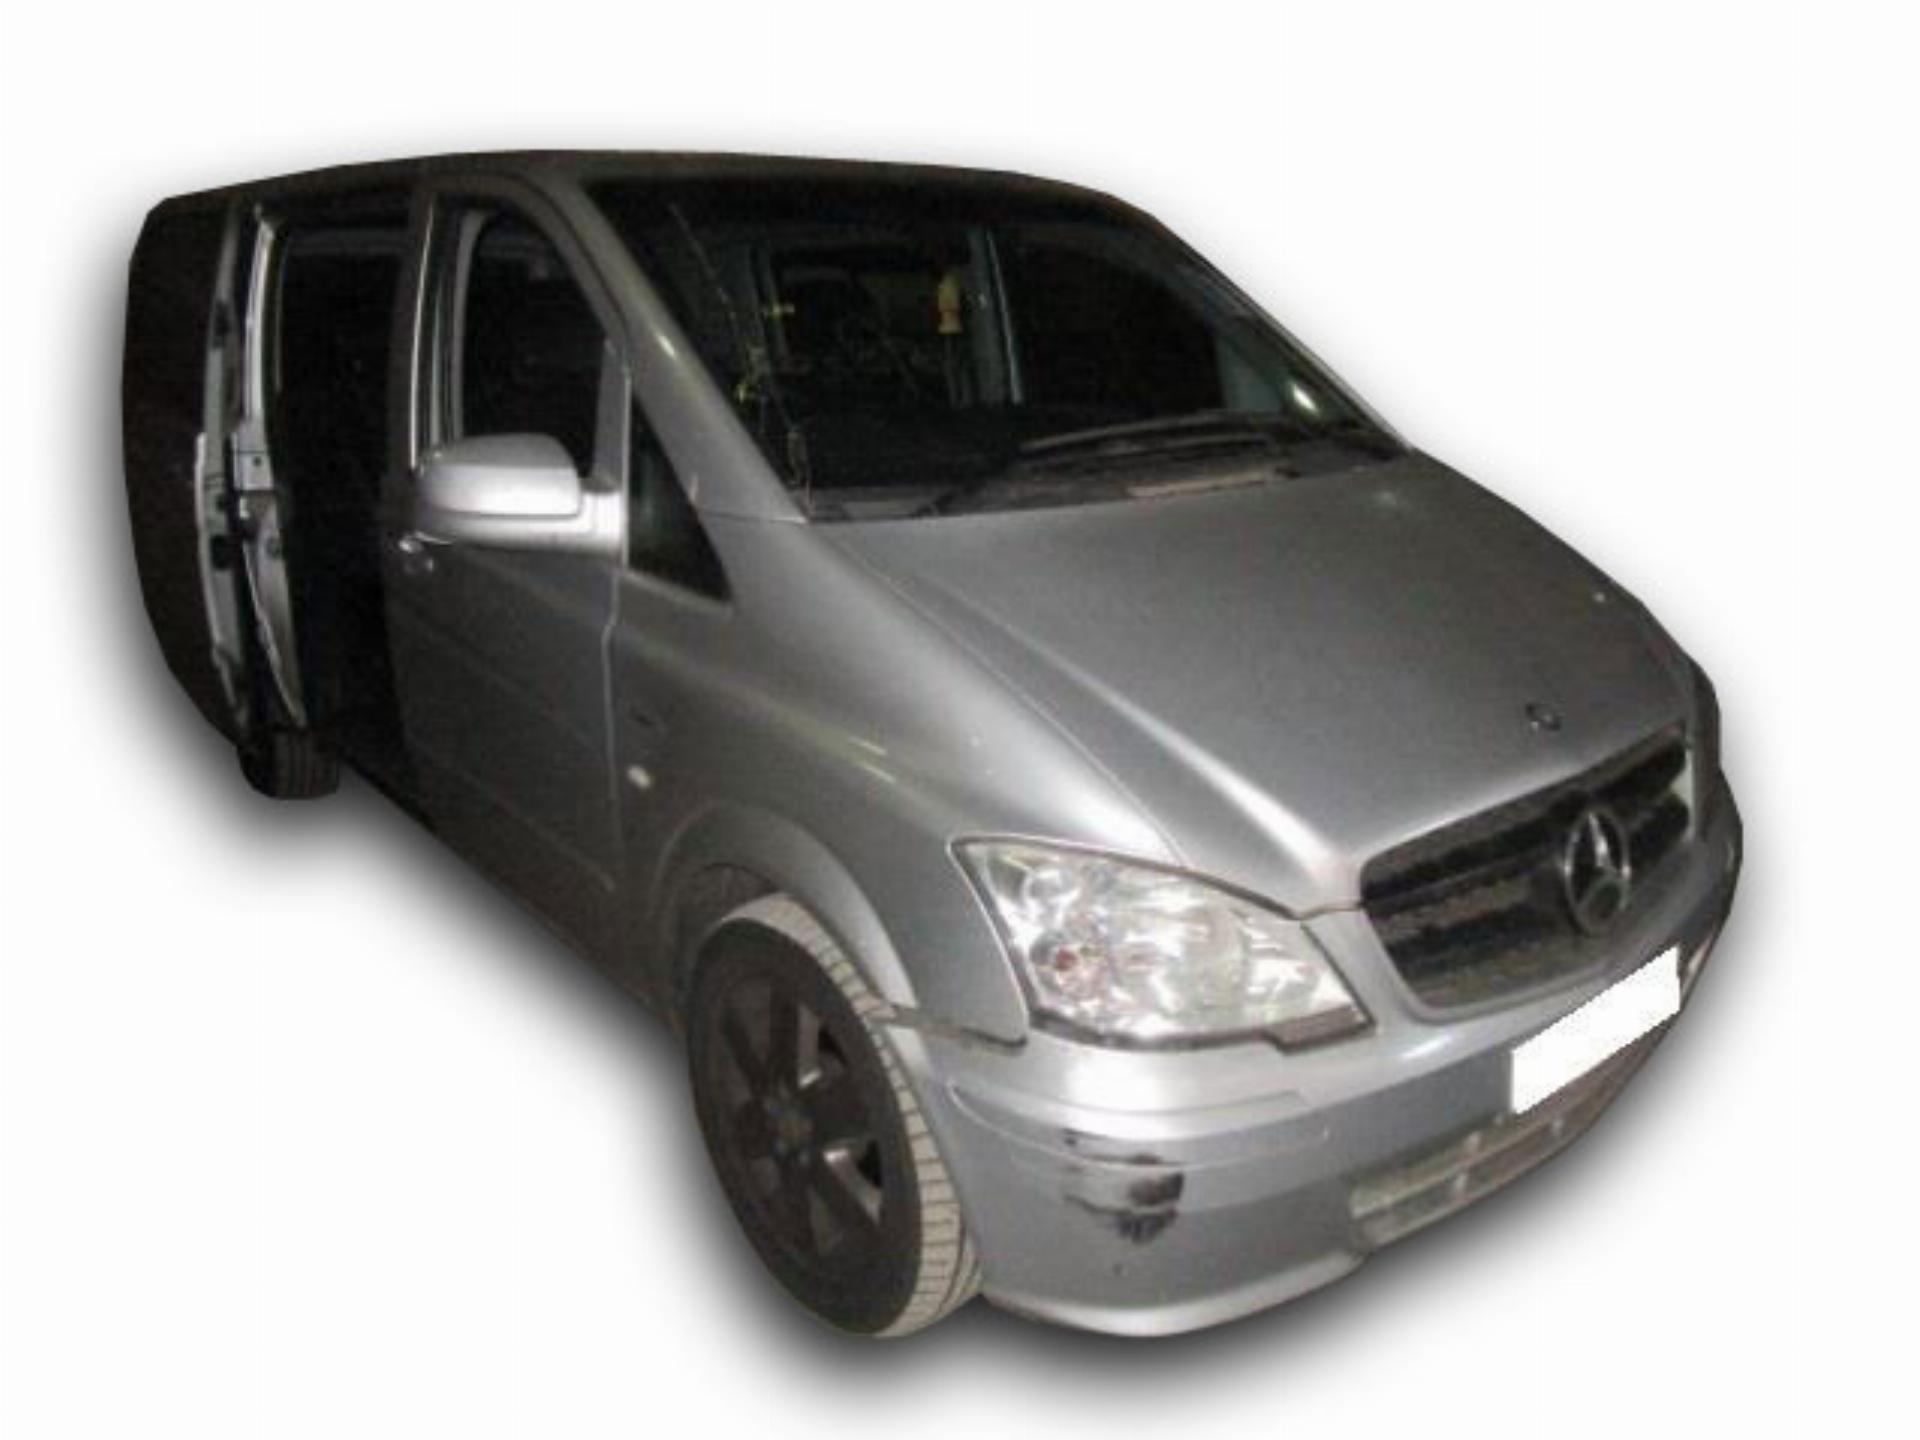 Mercedes Benz Vito 122 Cdi - Panel Van